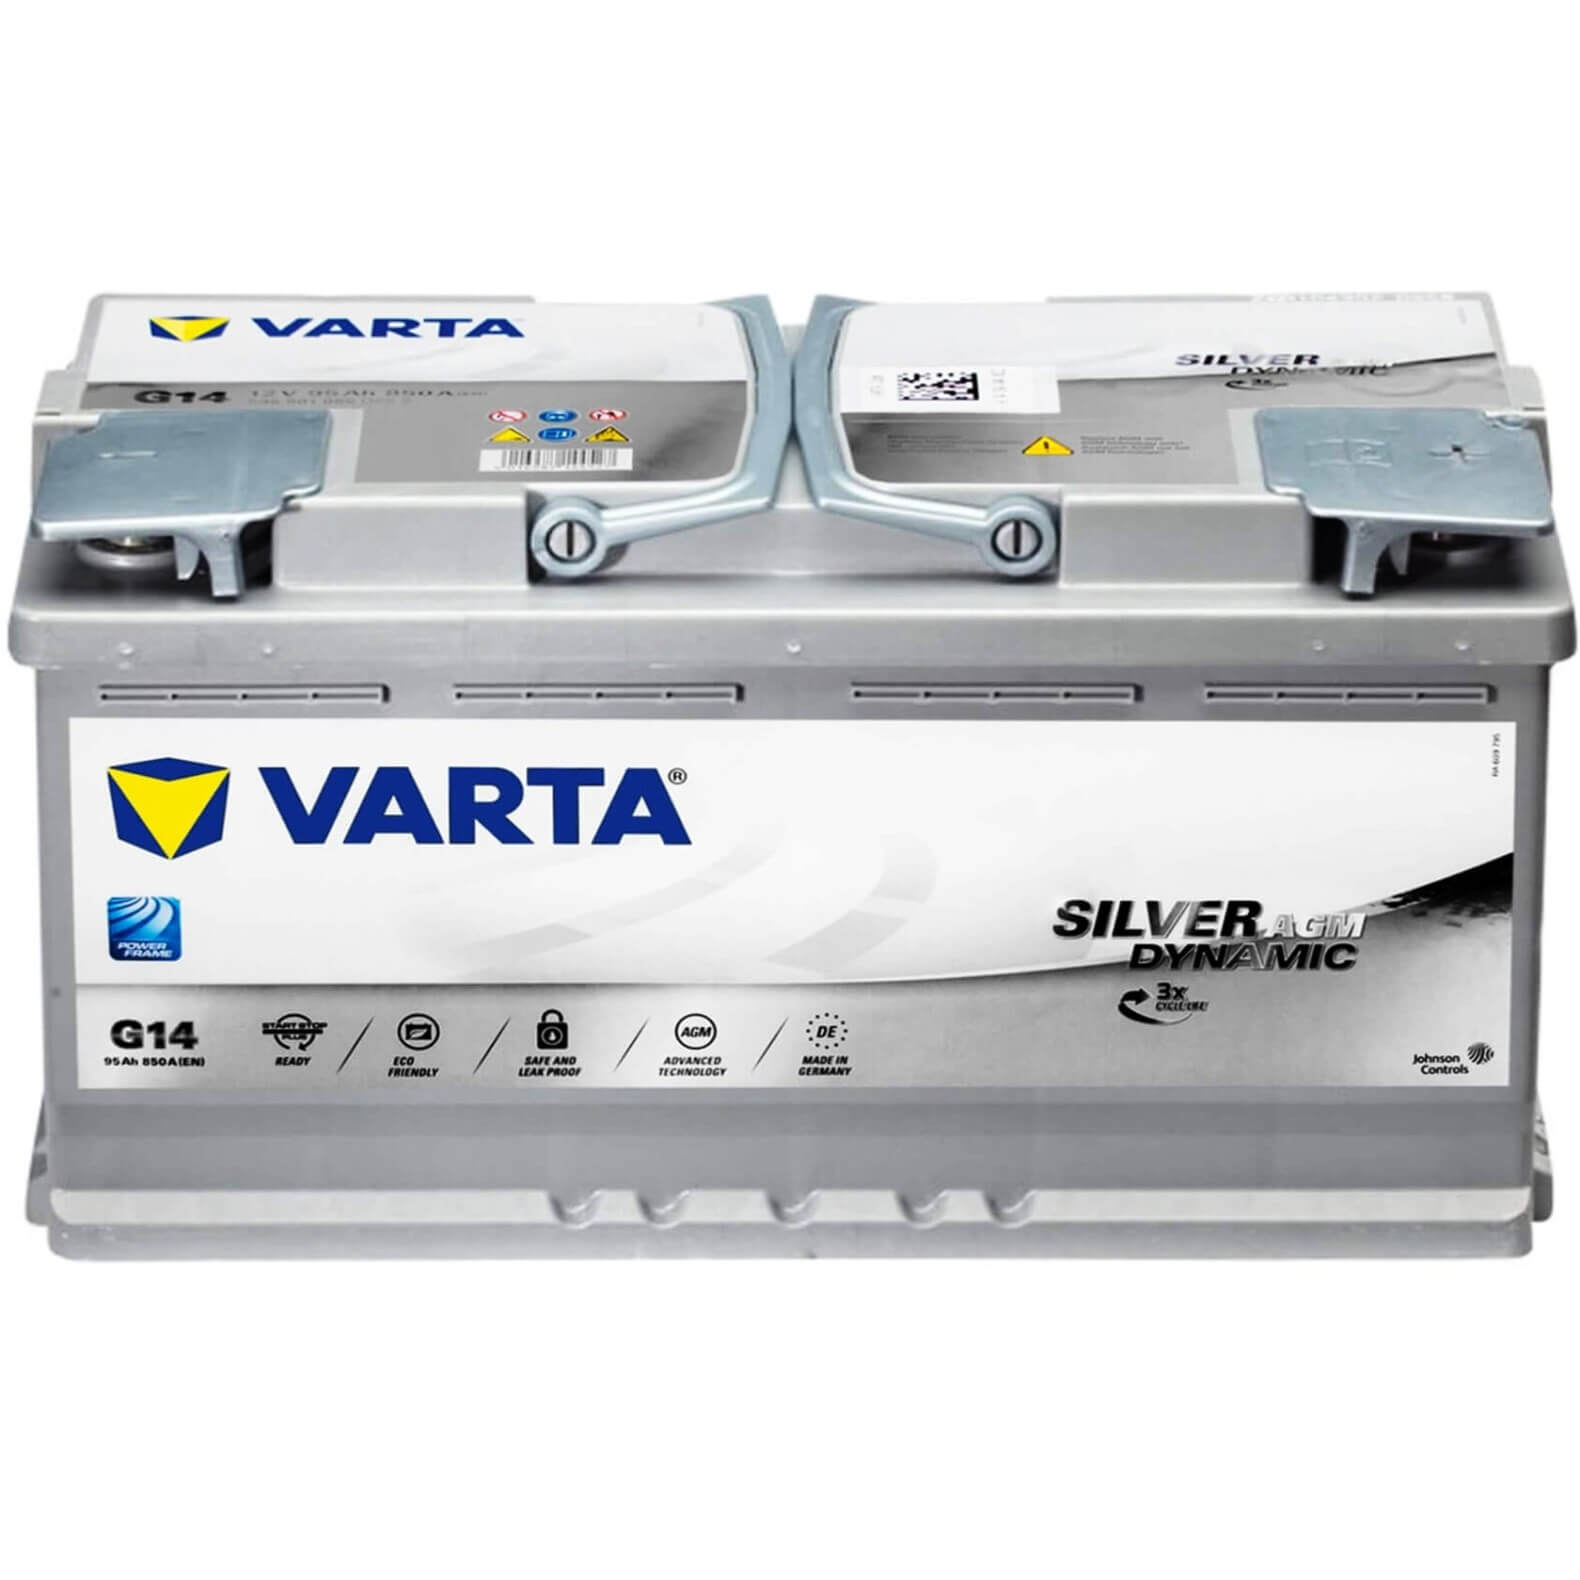 Batterie Varta LFS95 PRo Starter 12v 95ah 800A 930 074 068 L5D